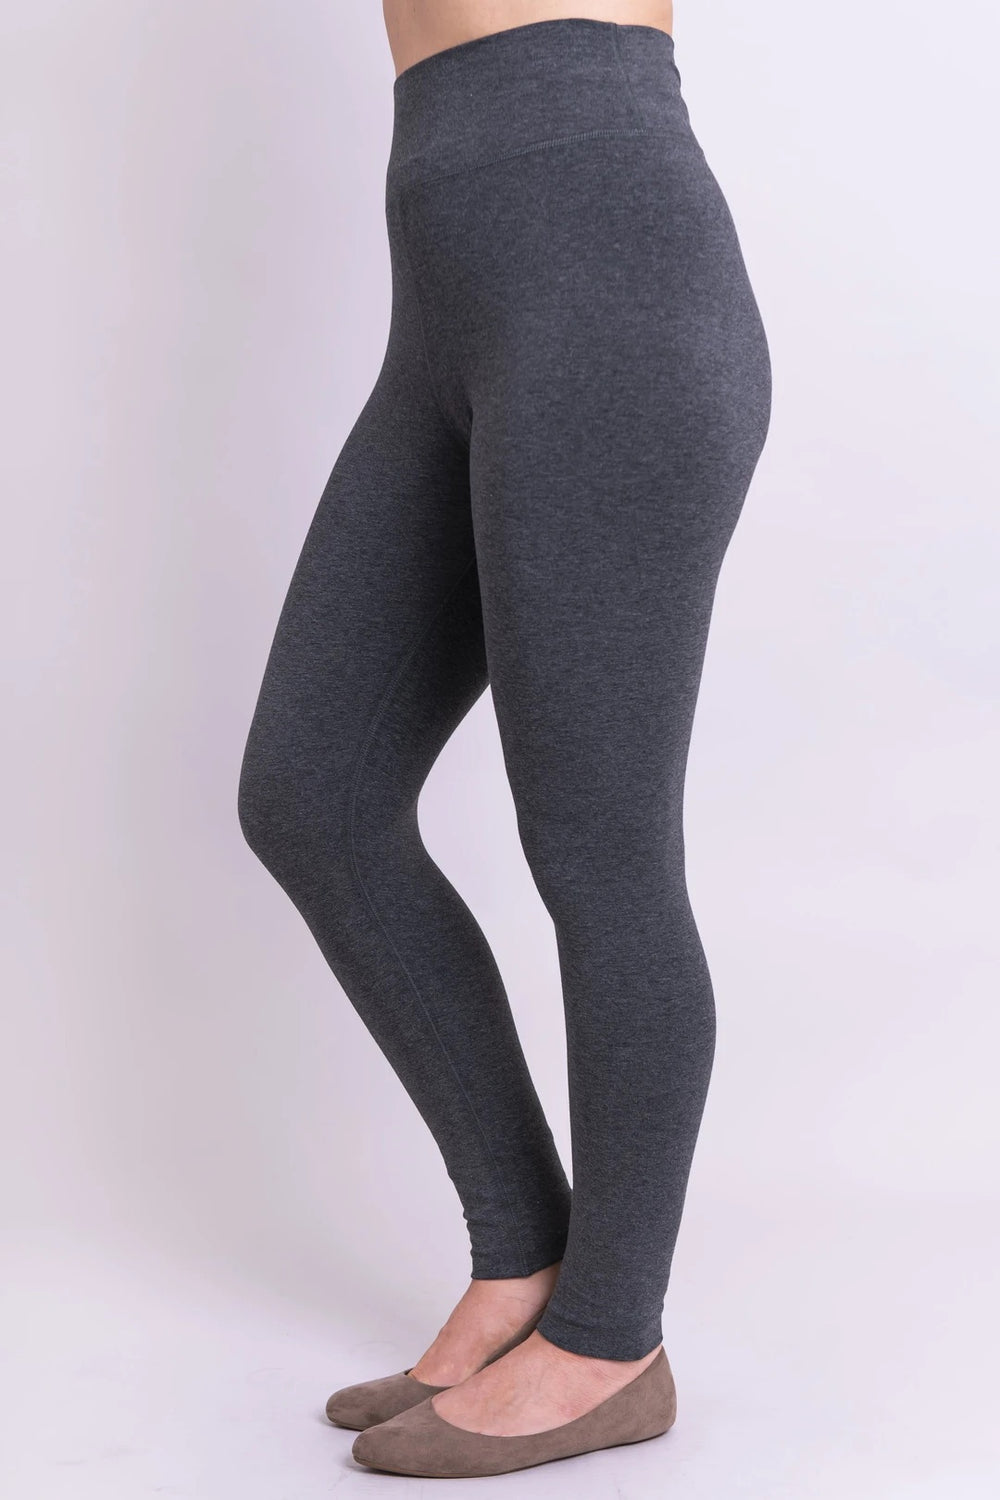 2DXuixsh Undergarment for Sheer Dress Women High Waist Leggings